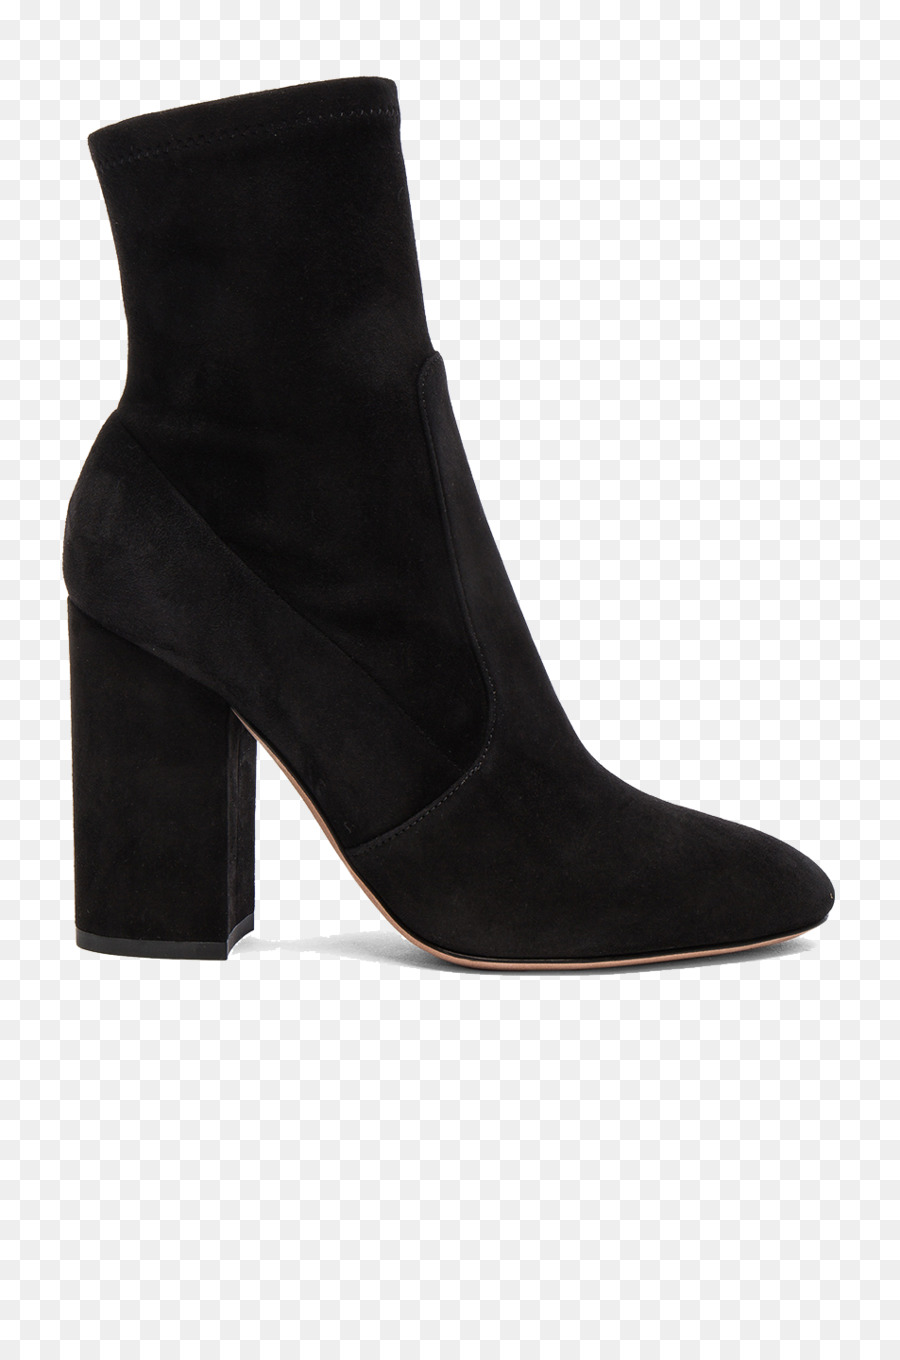 Boot in pelle Scamosciata Scarpe col tacco Alto calzature - Nero stivali da donna